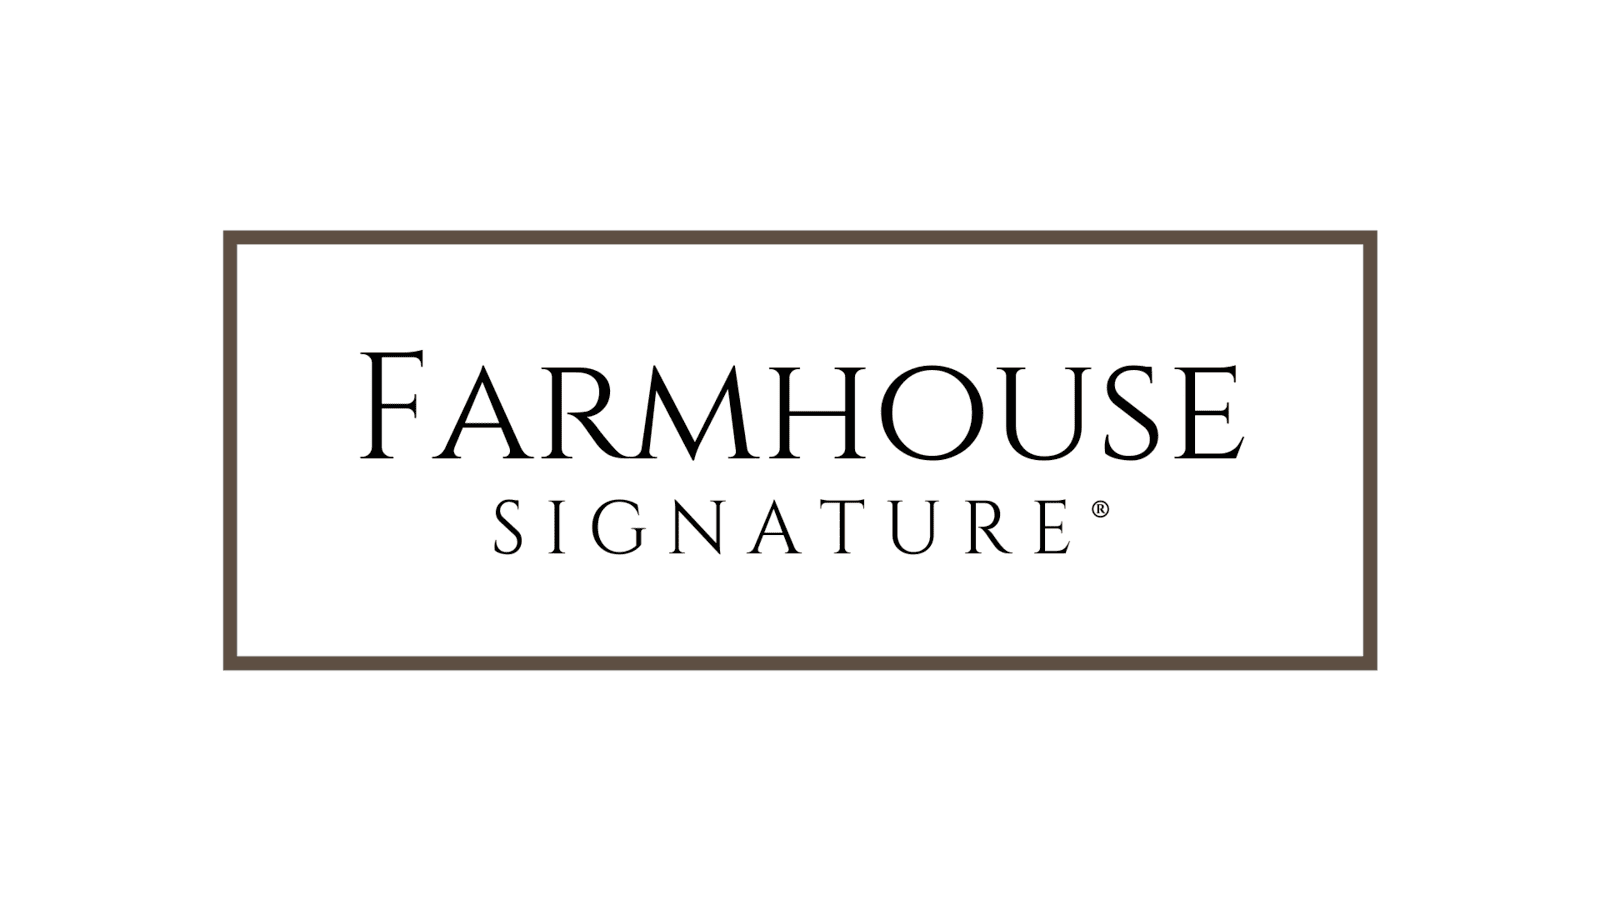 Farmhouse Signature